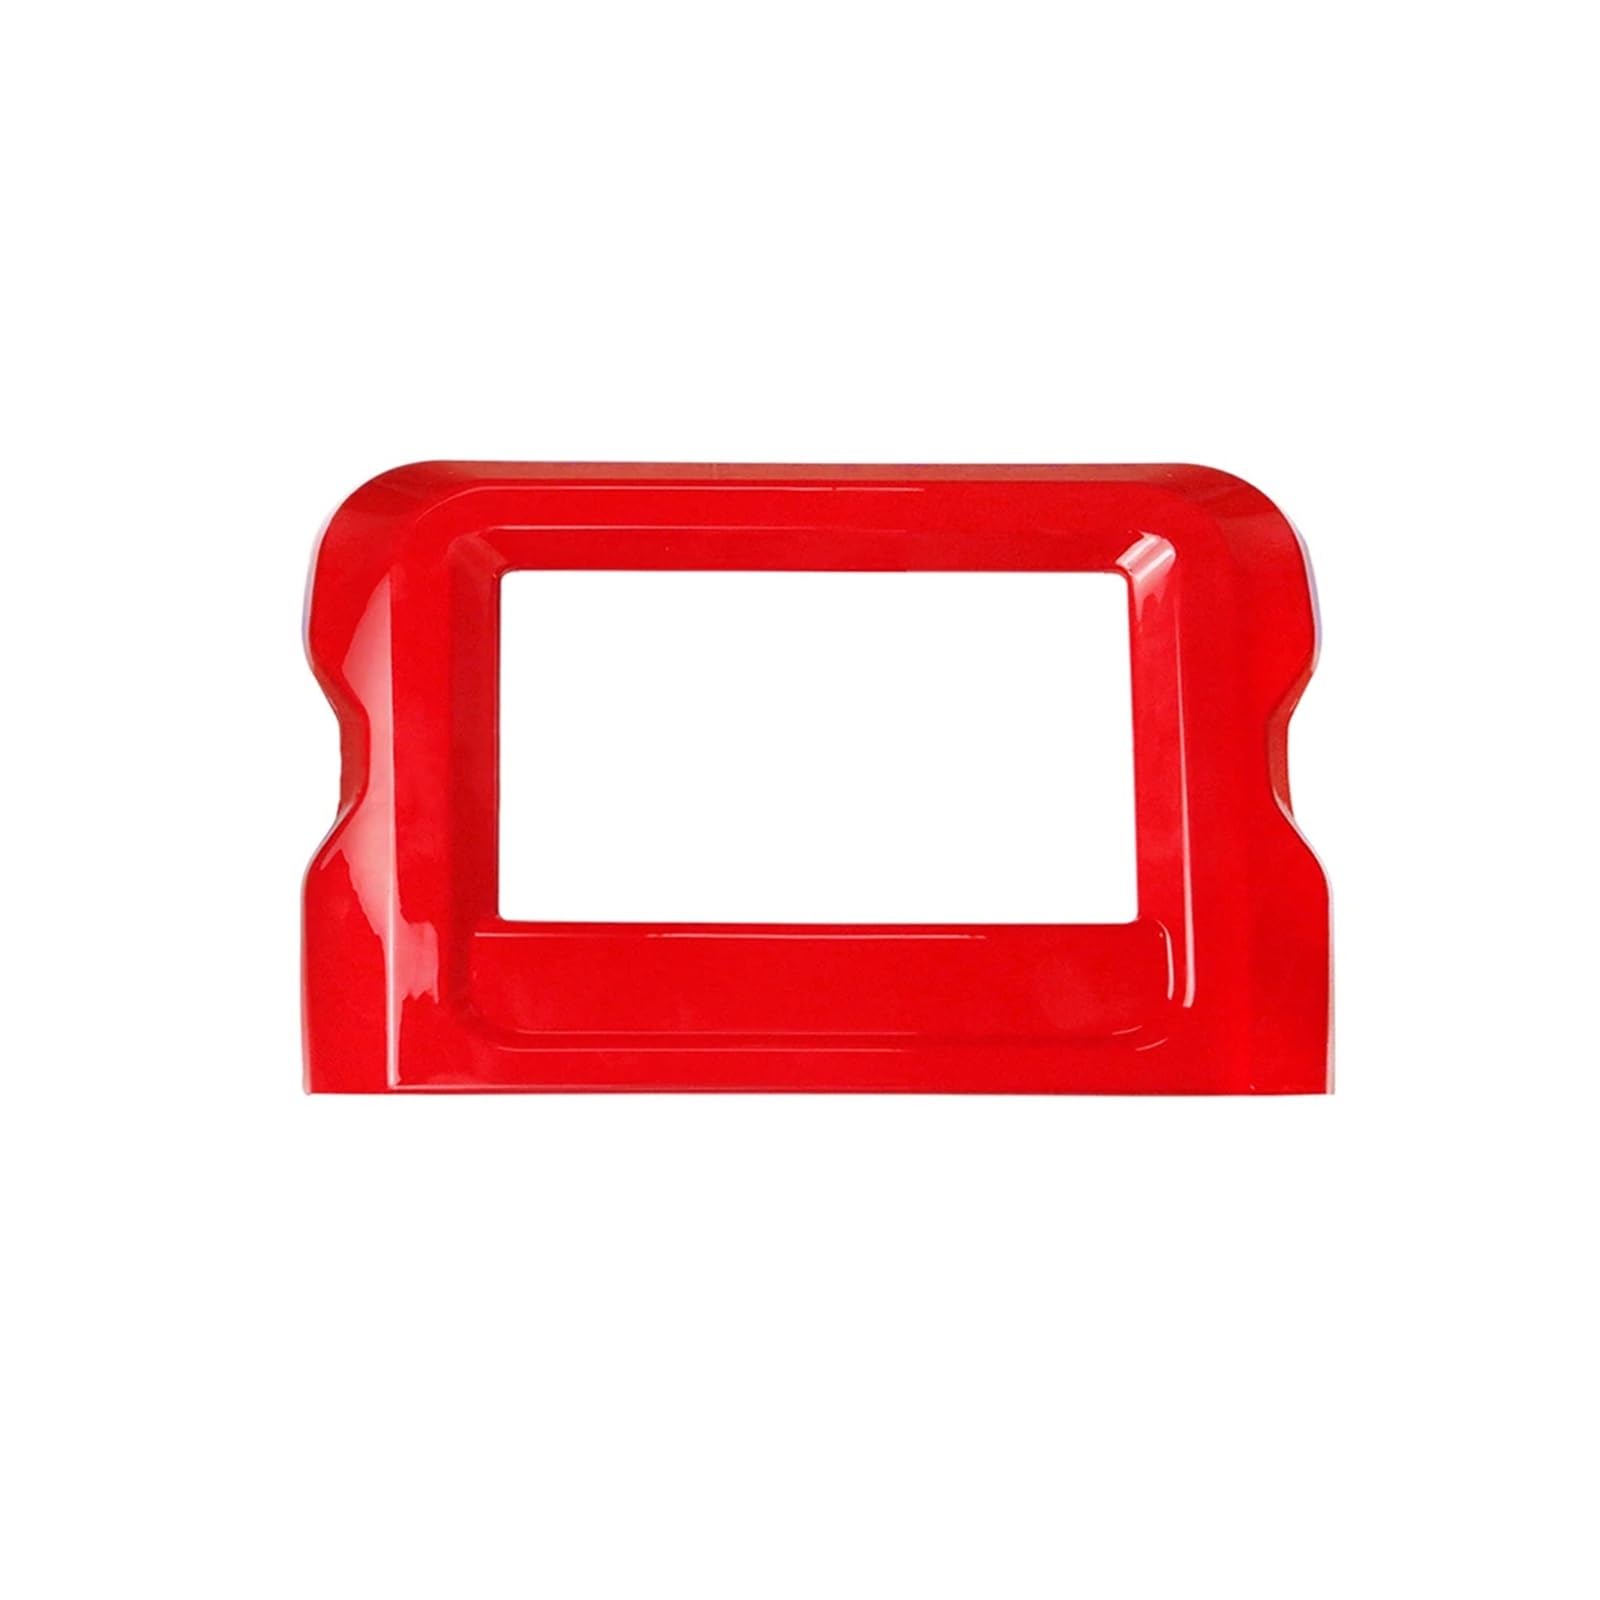 Auto-Innenrahmen Auto Center Console Navigation Panel Abdeckung Für Jeep Für Wrangler Für JL Für JLU 2018 2019 2020 Auto-Mittelkonsolenverkleidung(Red) von INXKED